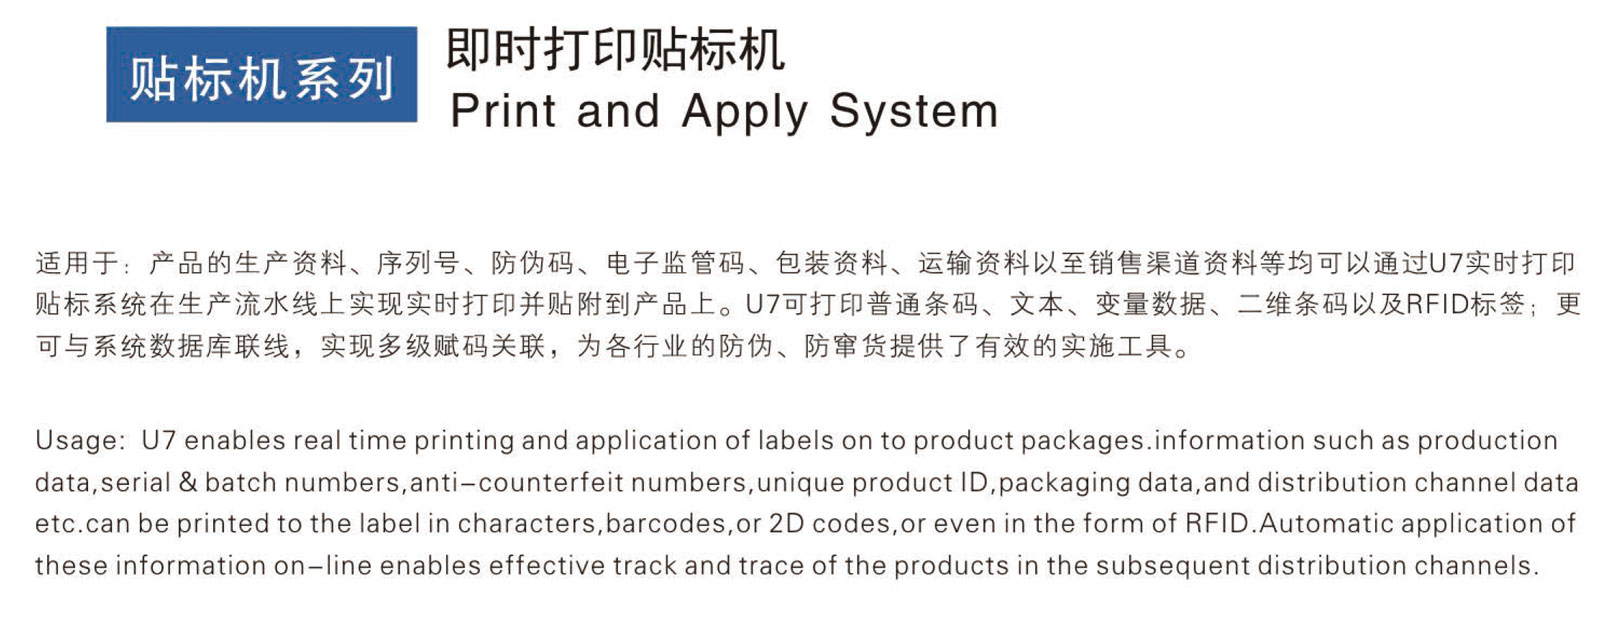 成都申越即时打印贴标机Print and Apply System